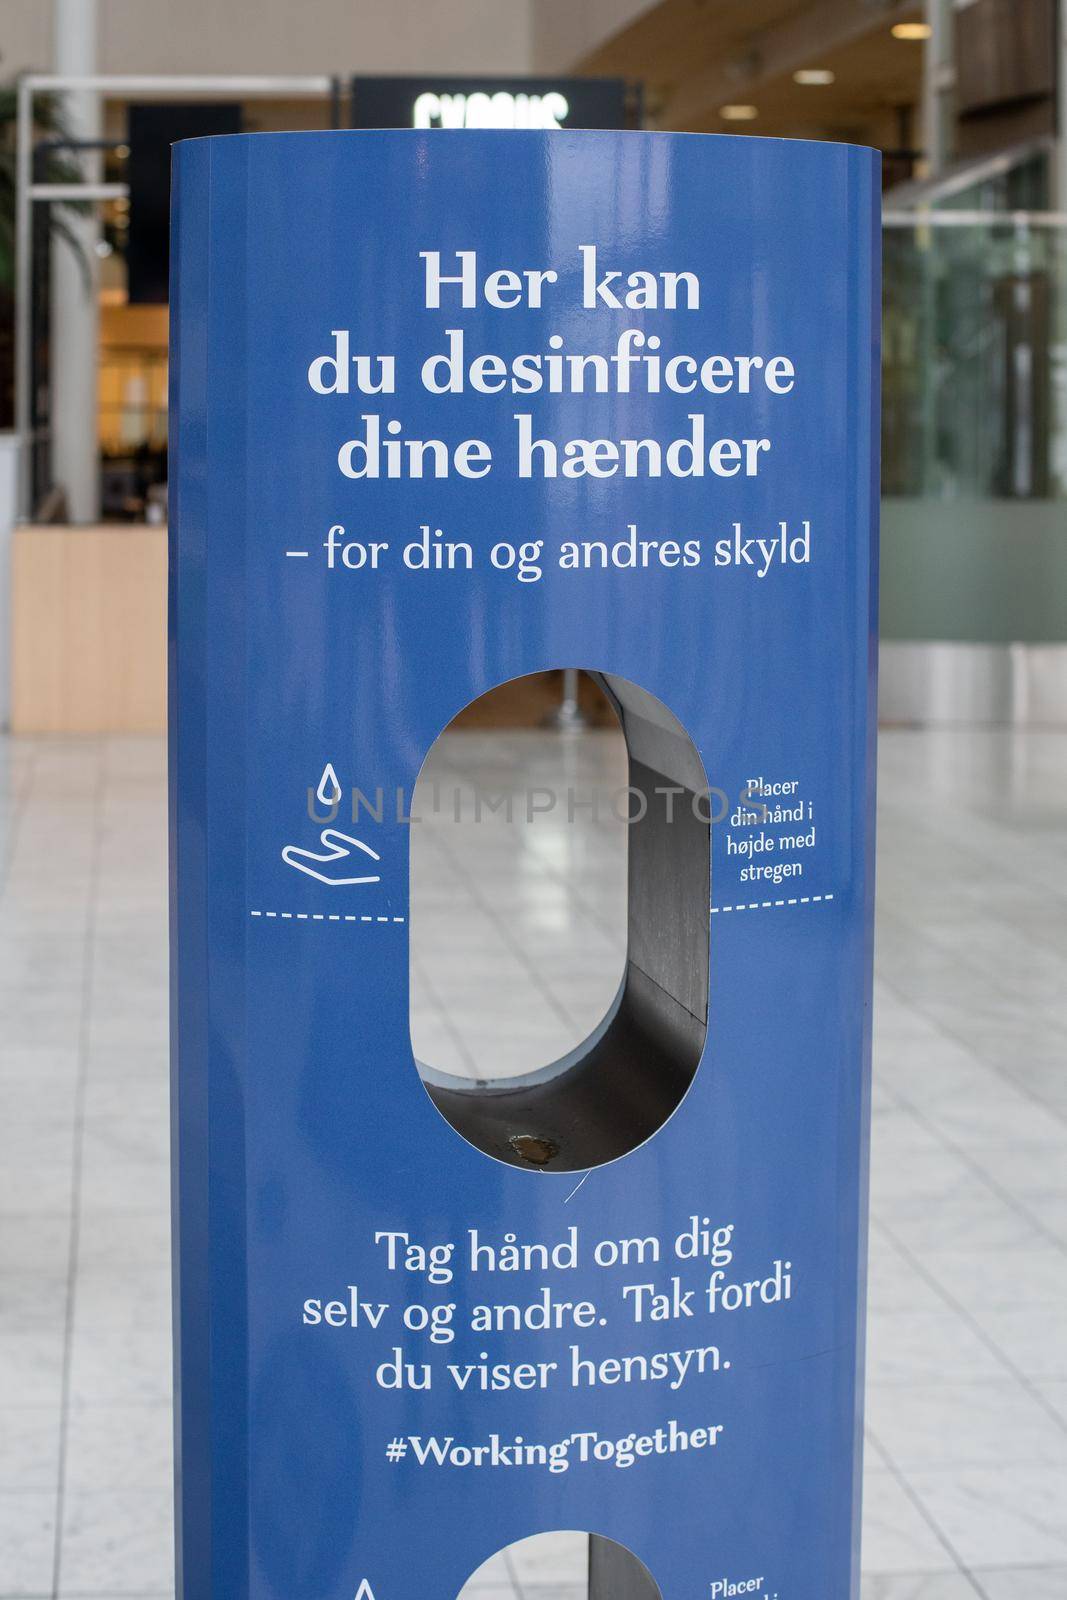 Copenhagen, Denmark - November 17, 2020: A hand sanitizer station inside Fisketorvet Shopping Mall.